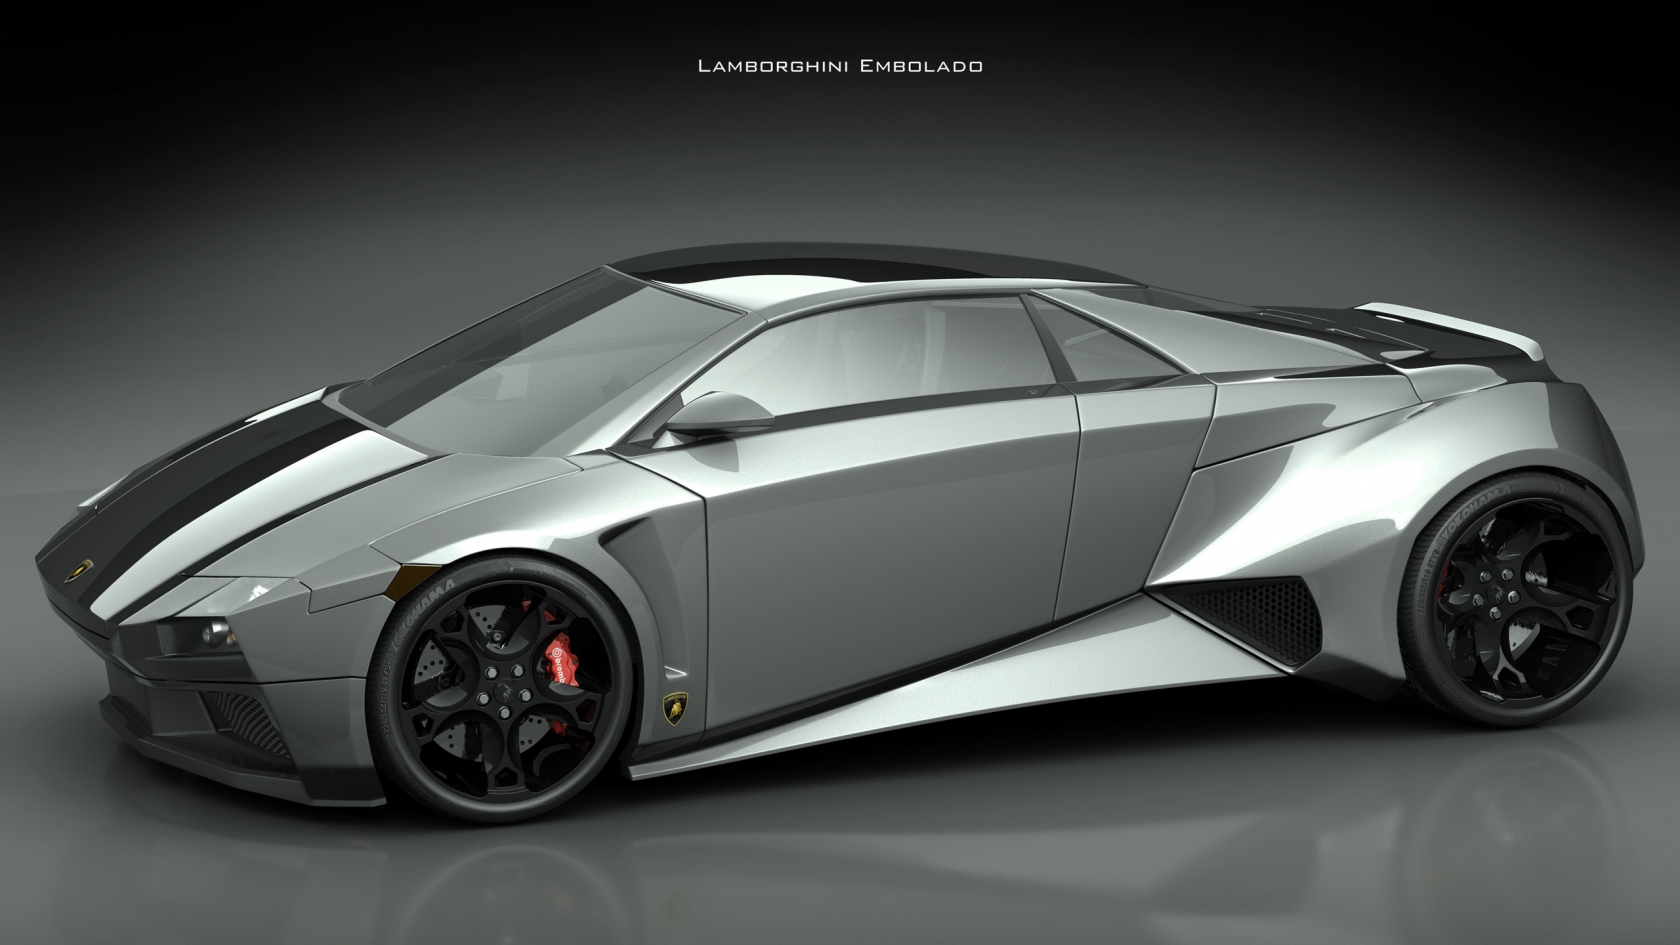 Lamborghini Embolado for 1680 x 945 HDTV resolution